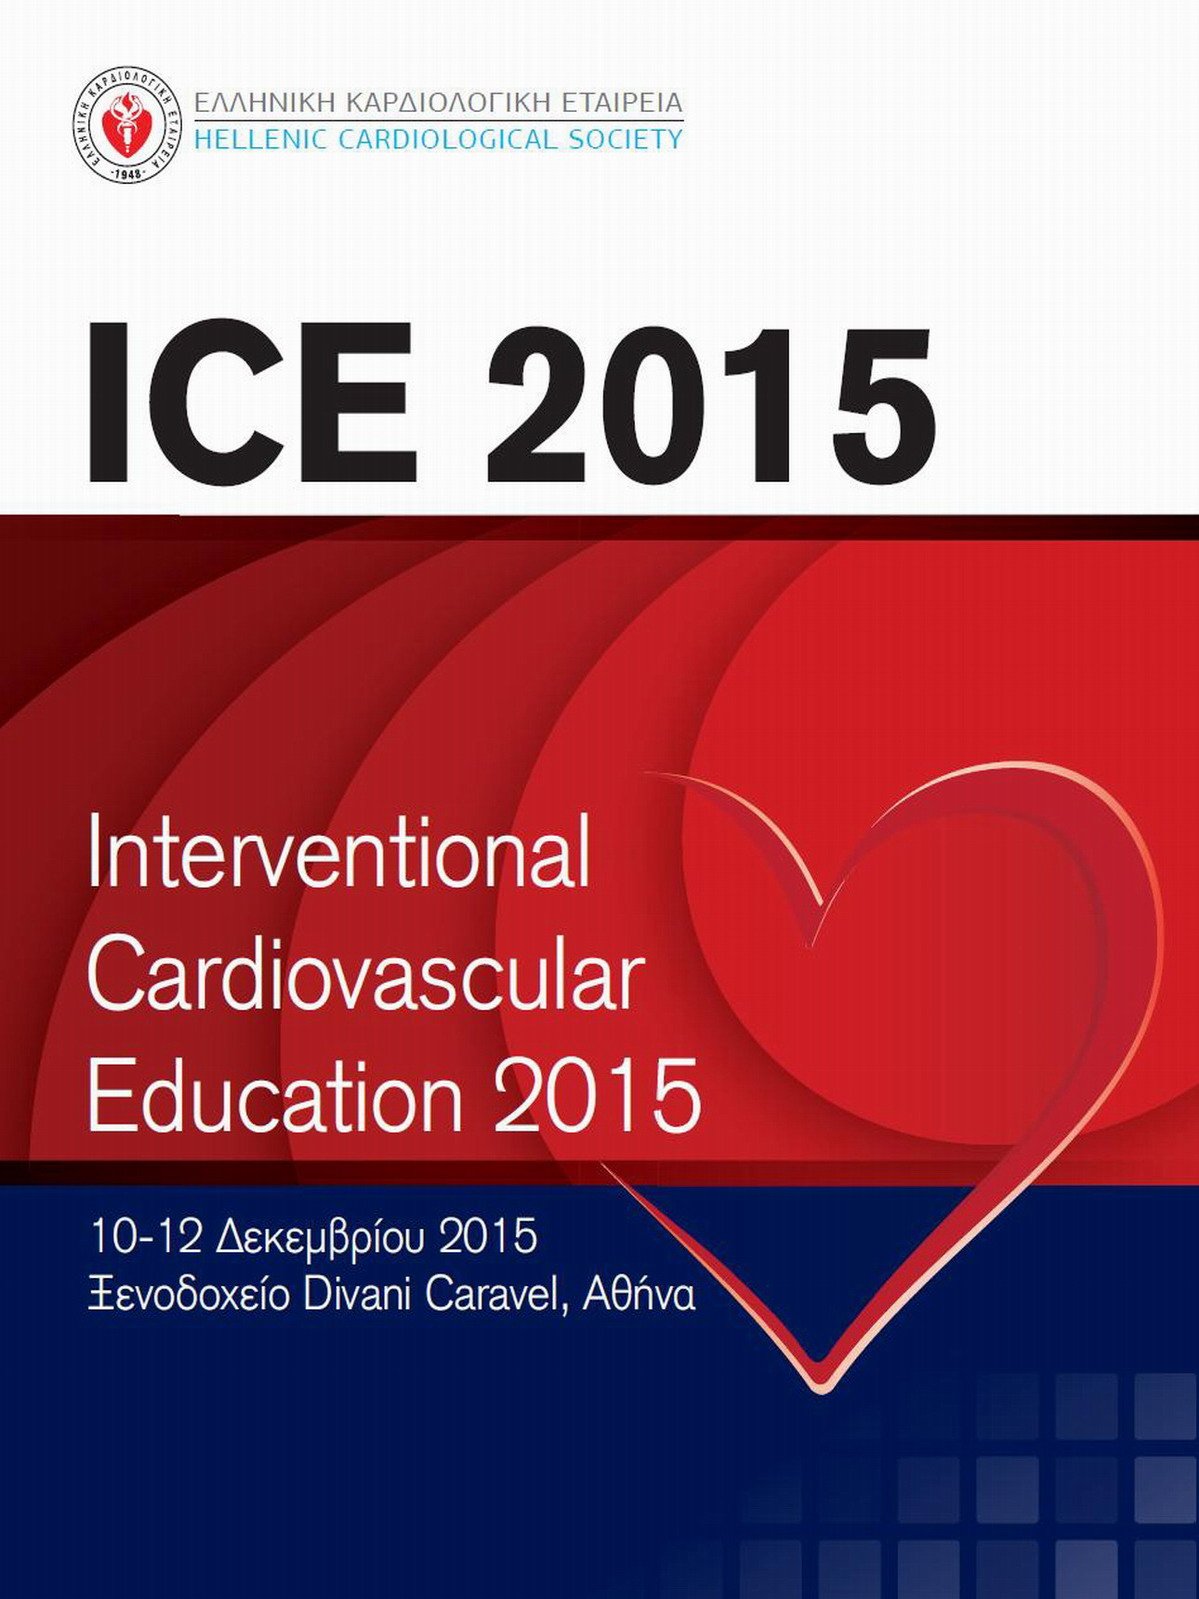 Διεθνές Συνέδριο Επεμβατικής Καρδιολογίας (ICE 2015)  από την Ελληνική Καρδιολογική Εταιρεία